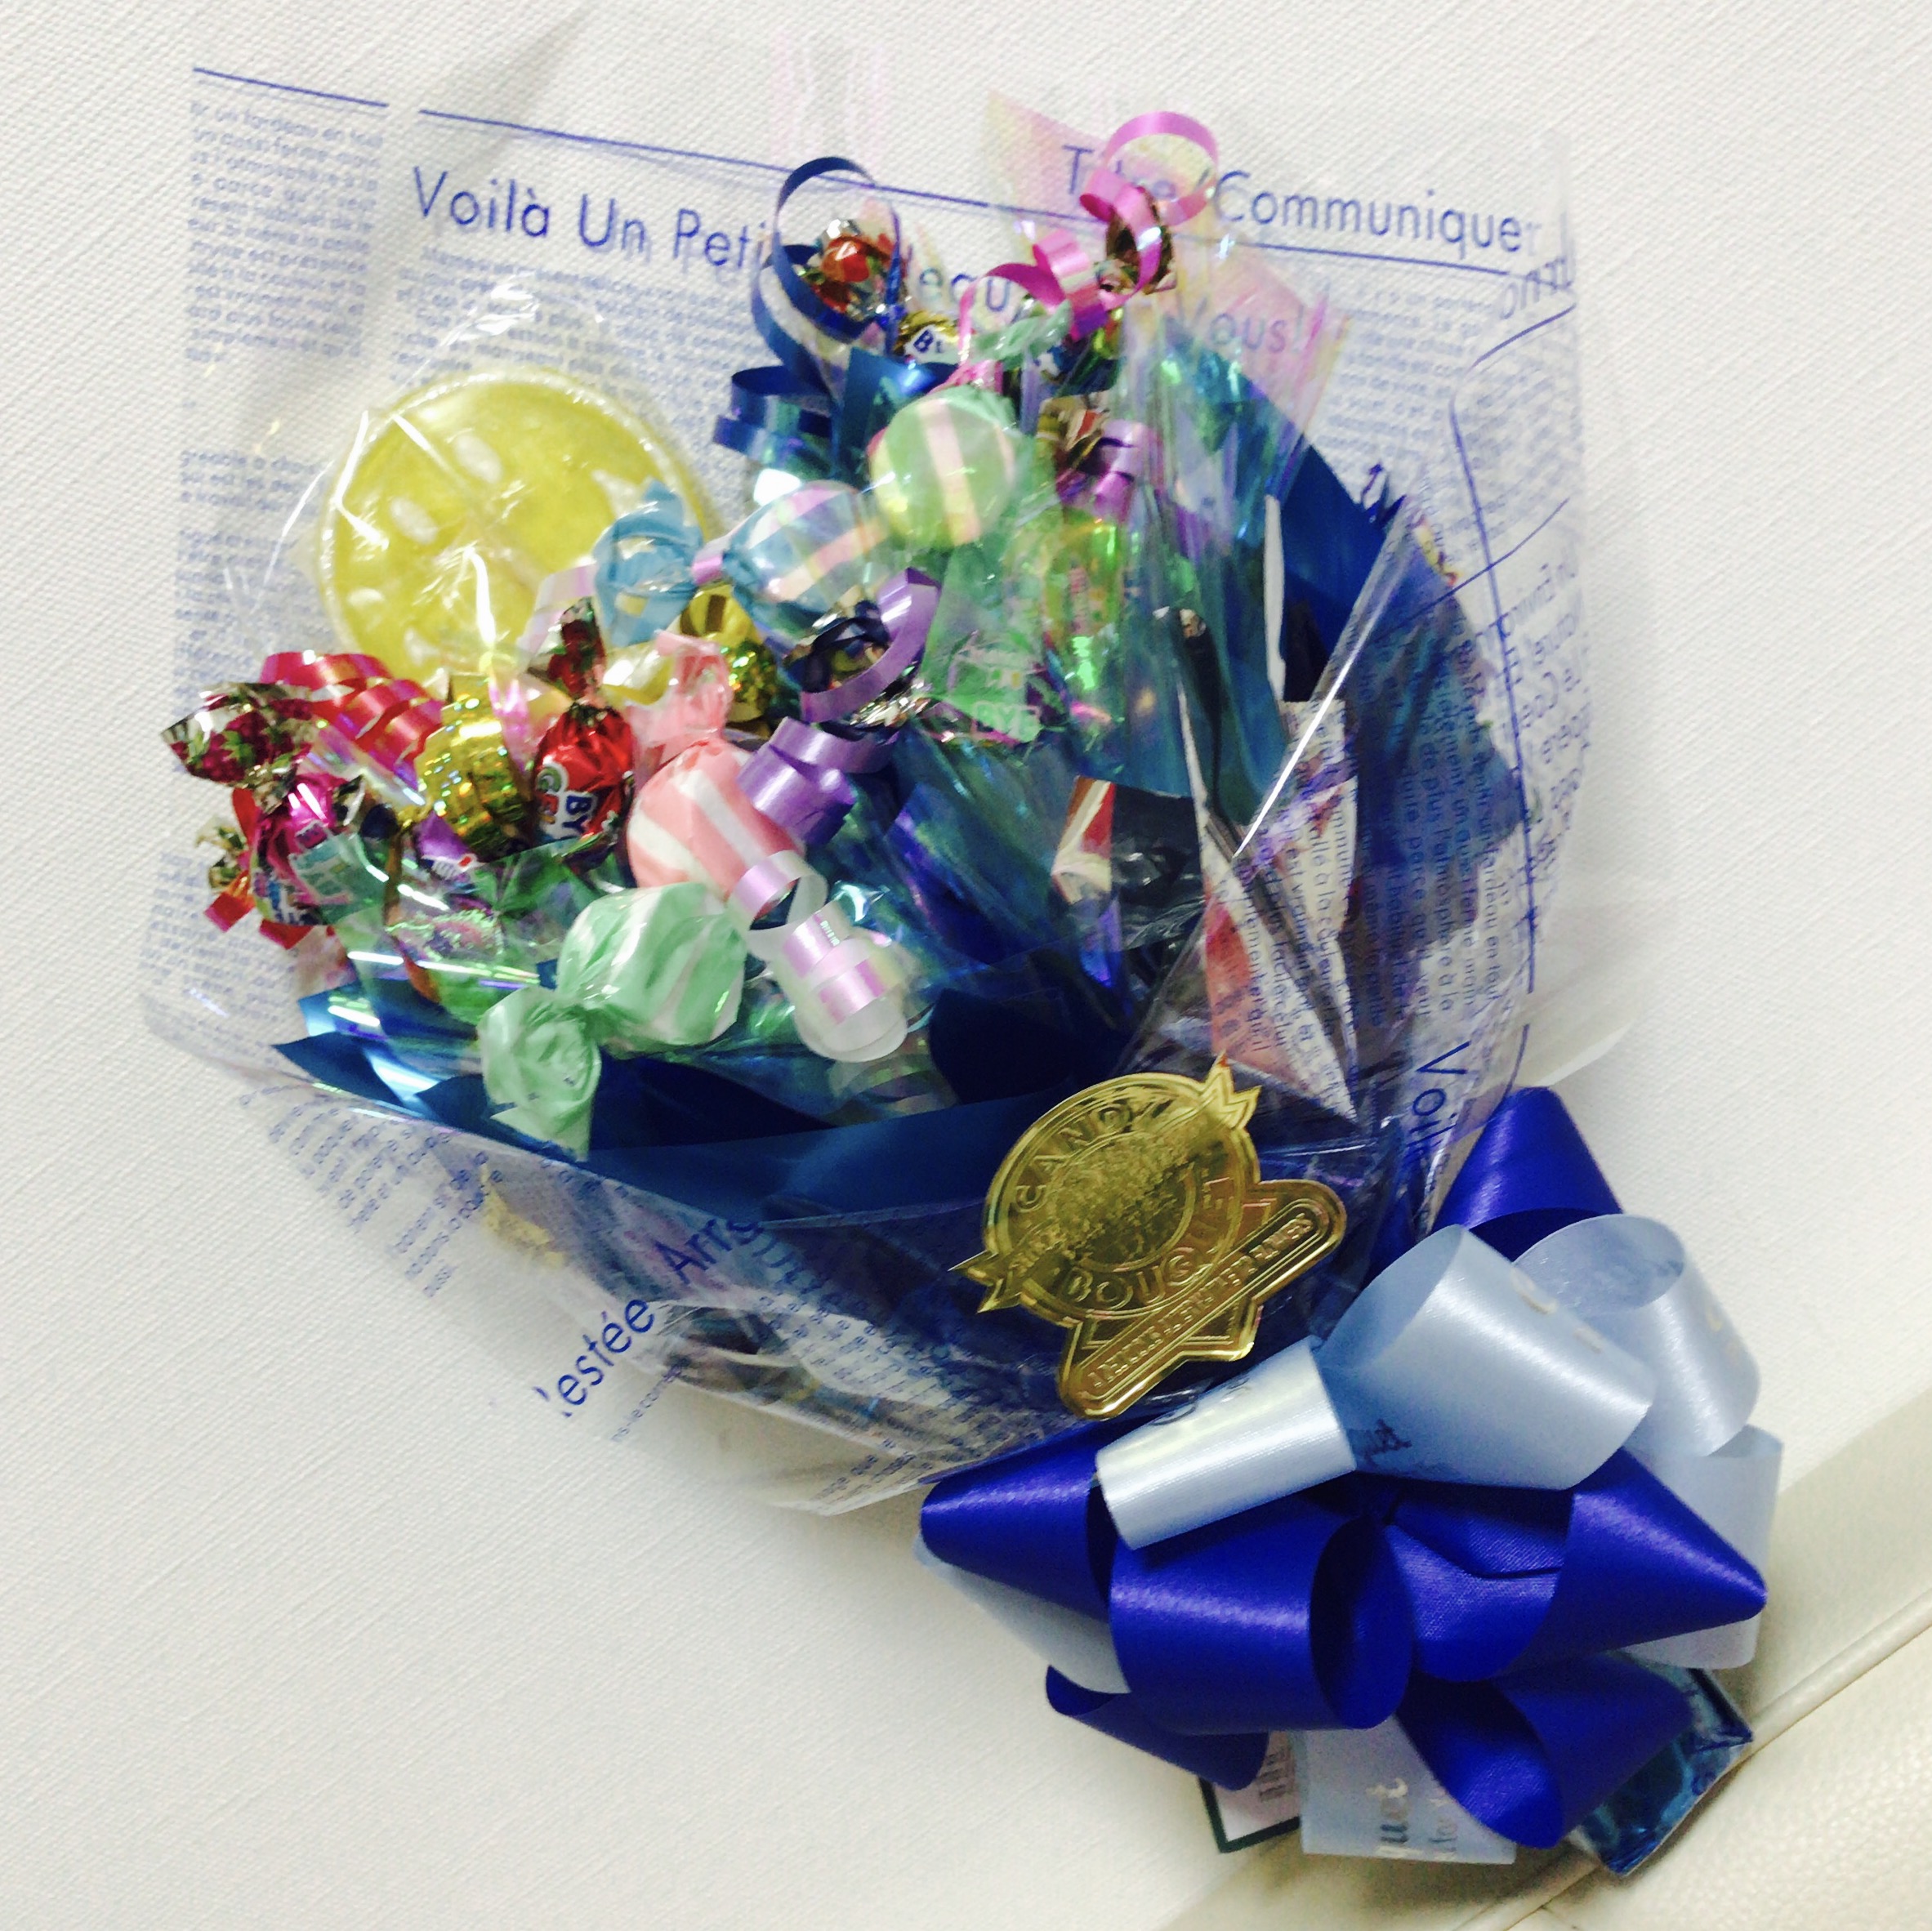 子供の発表会のプレゼントなどに♡ キャンディブーケがかわいすぎる♡ - ミーハーママの2歳差育児ブログ